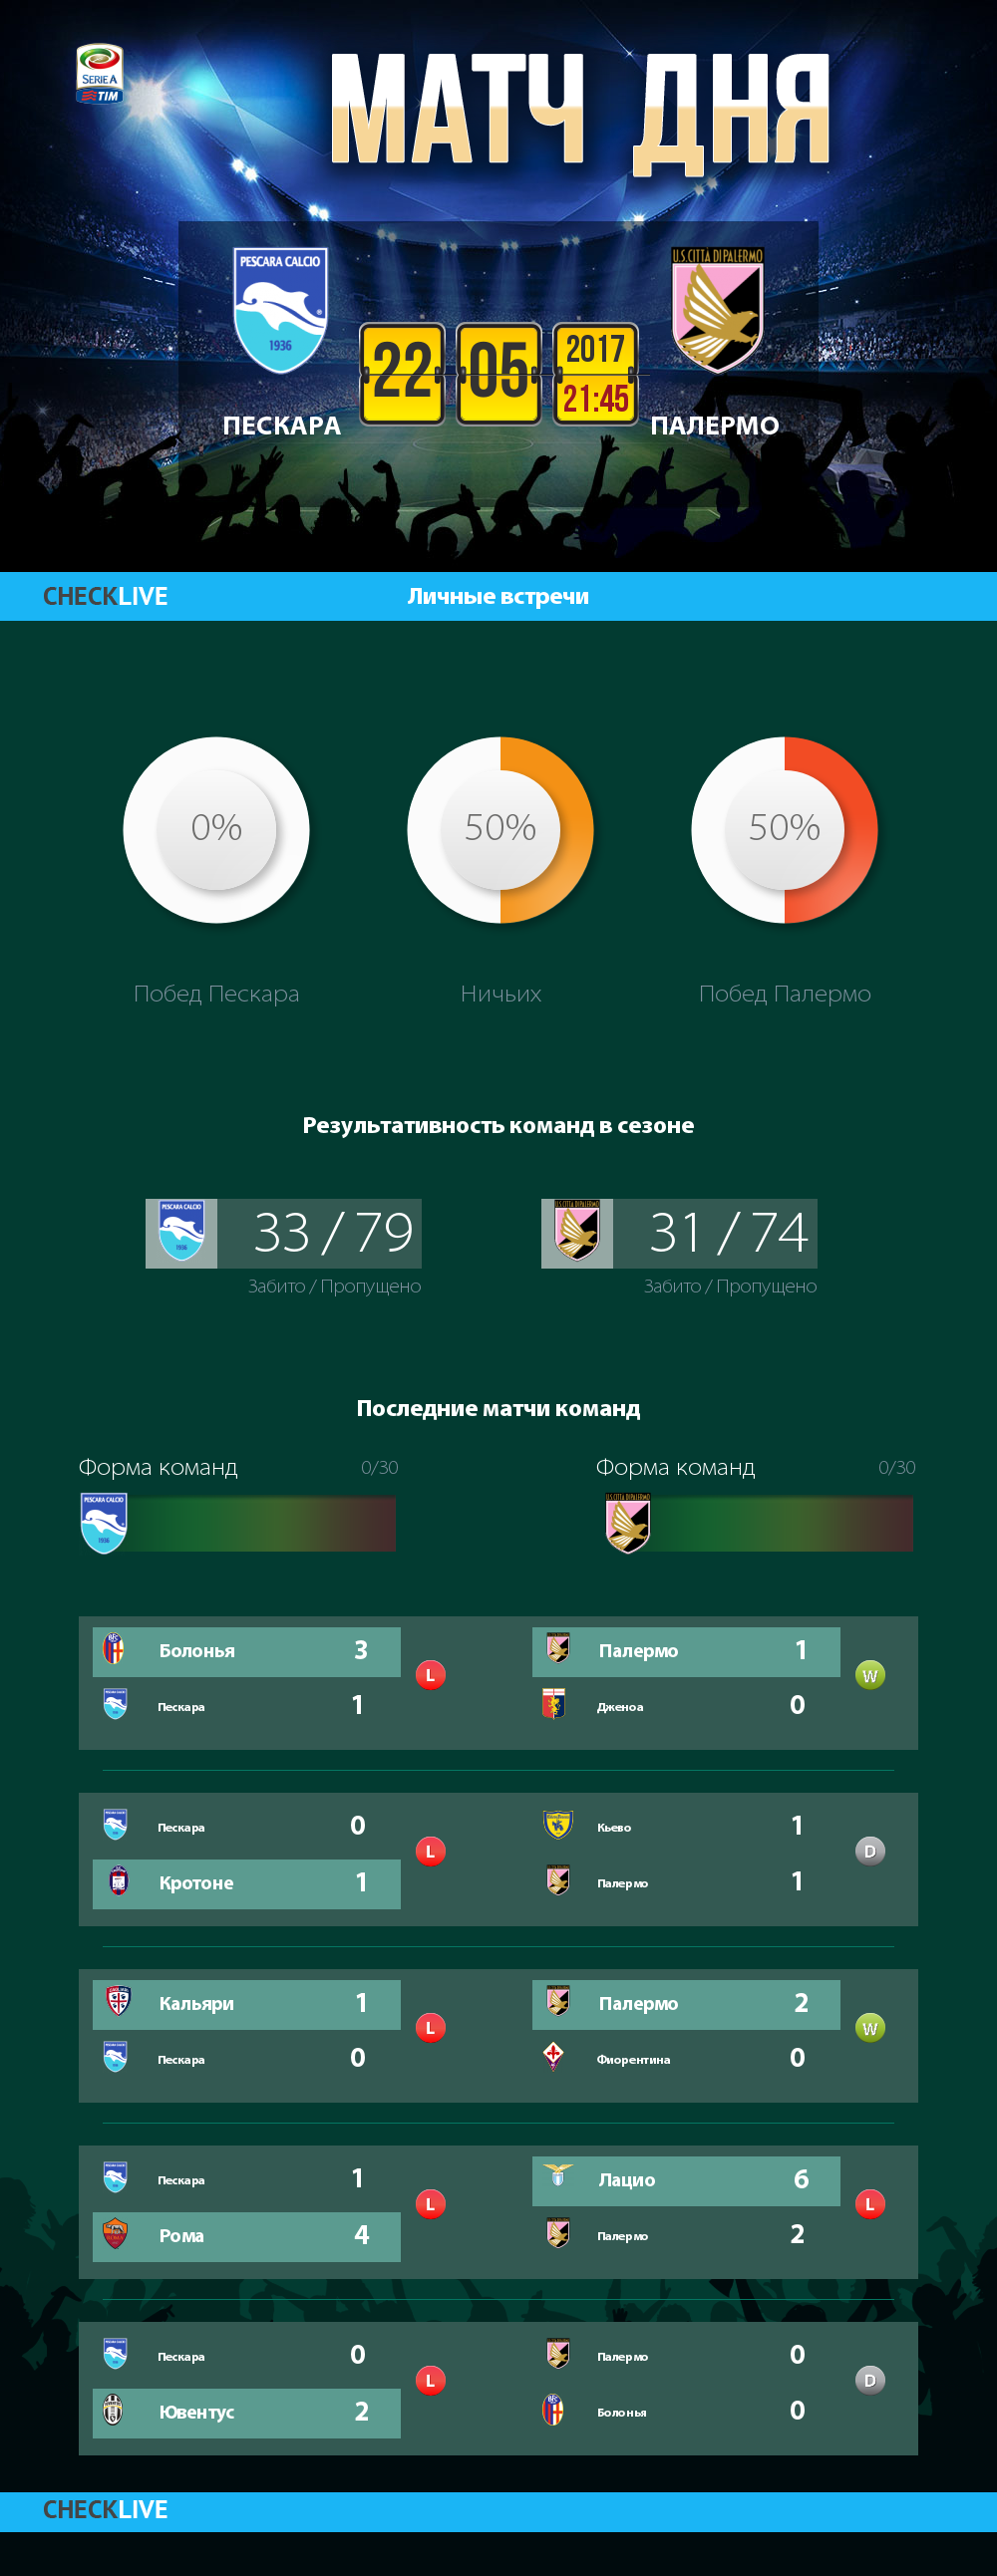 Инфографика Пескара и Палермо матч дня 22.05.2017